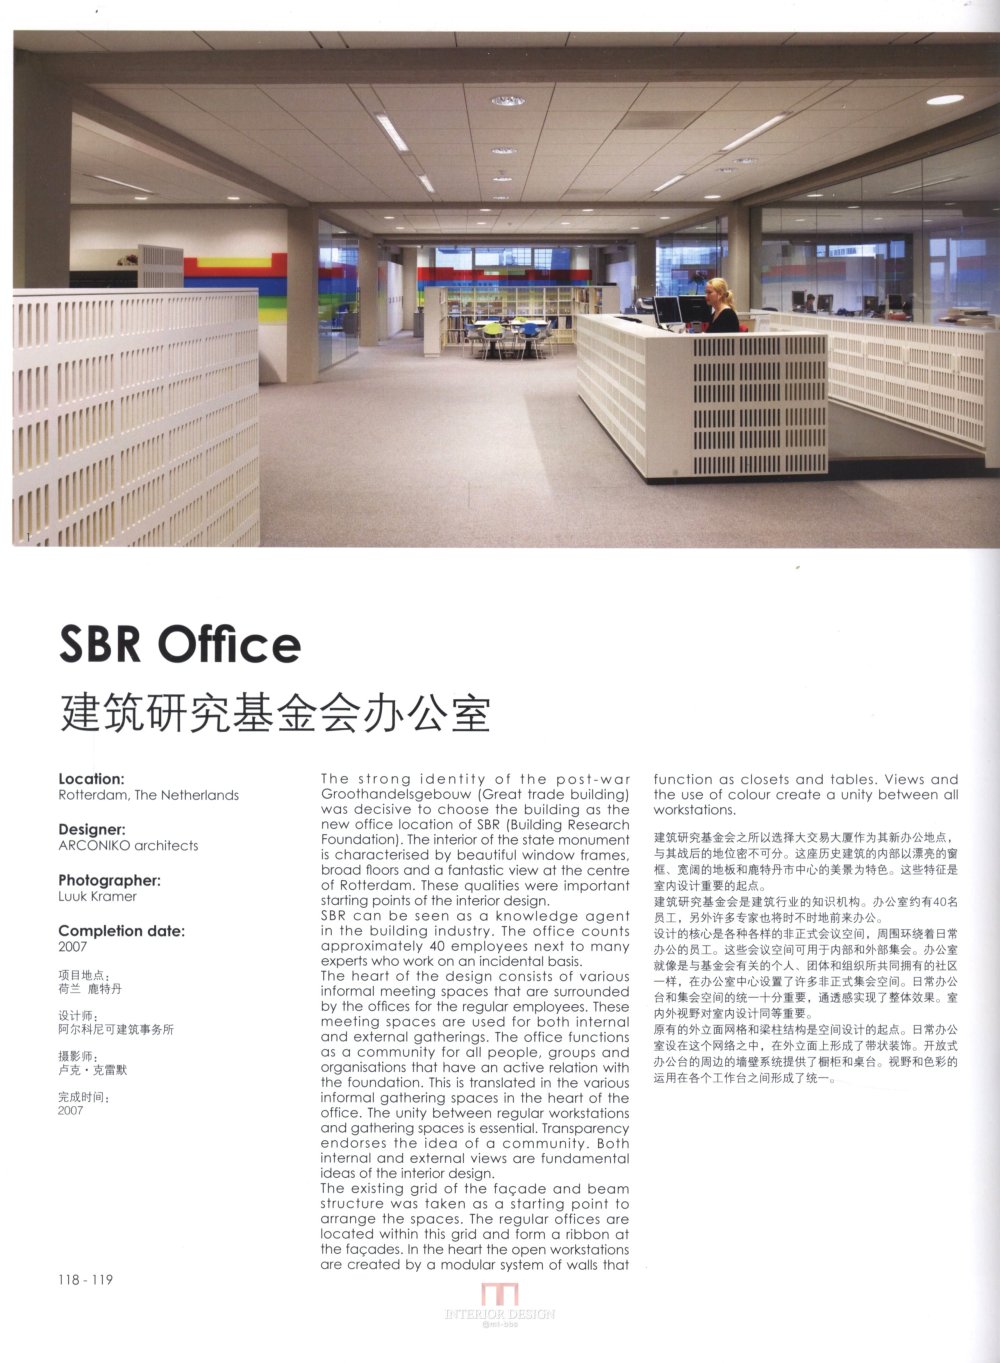 新型办公空间 扫描书_kobi 0115.jpg